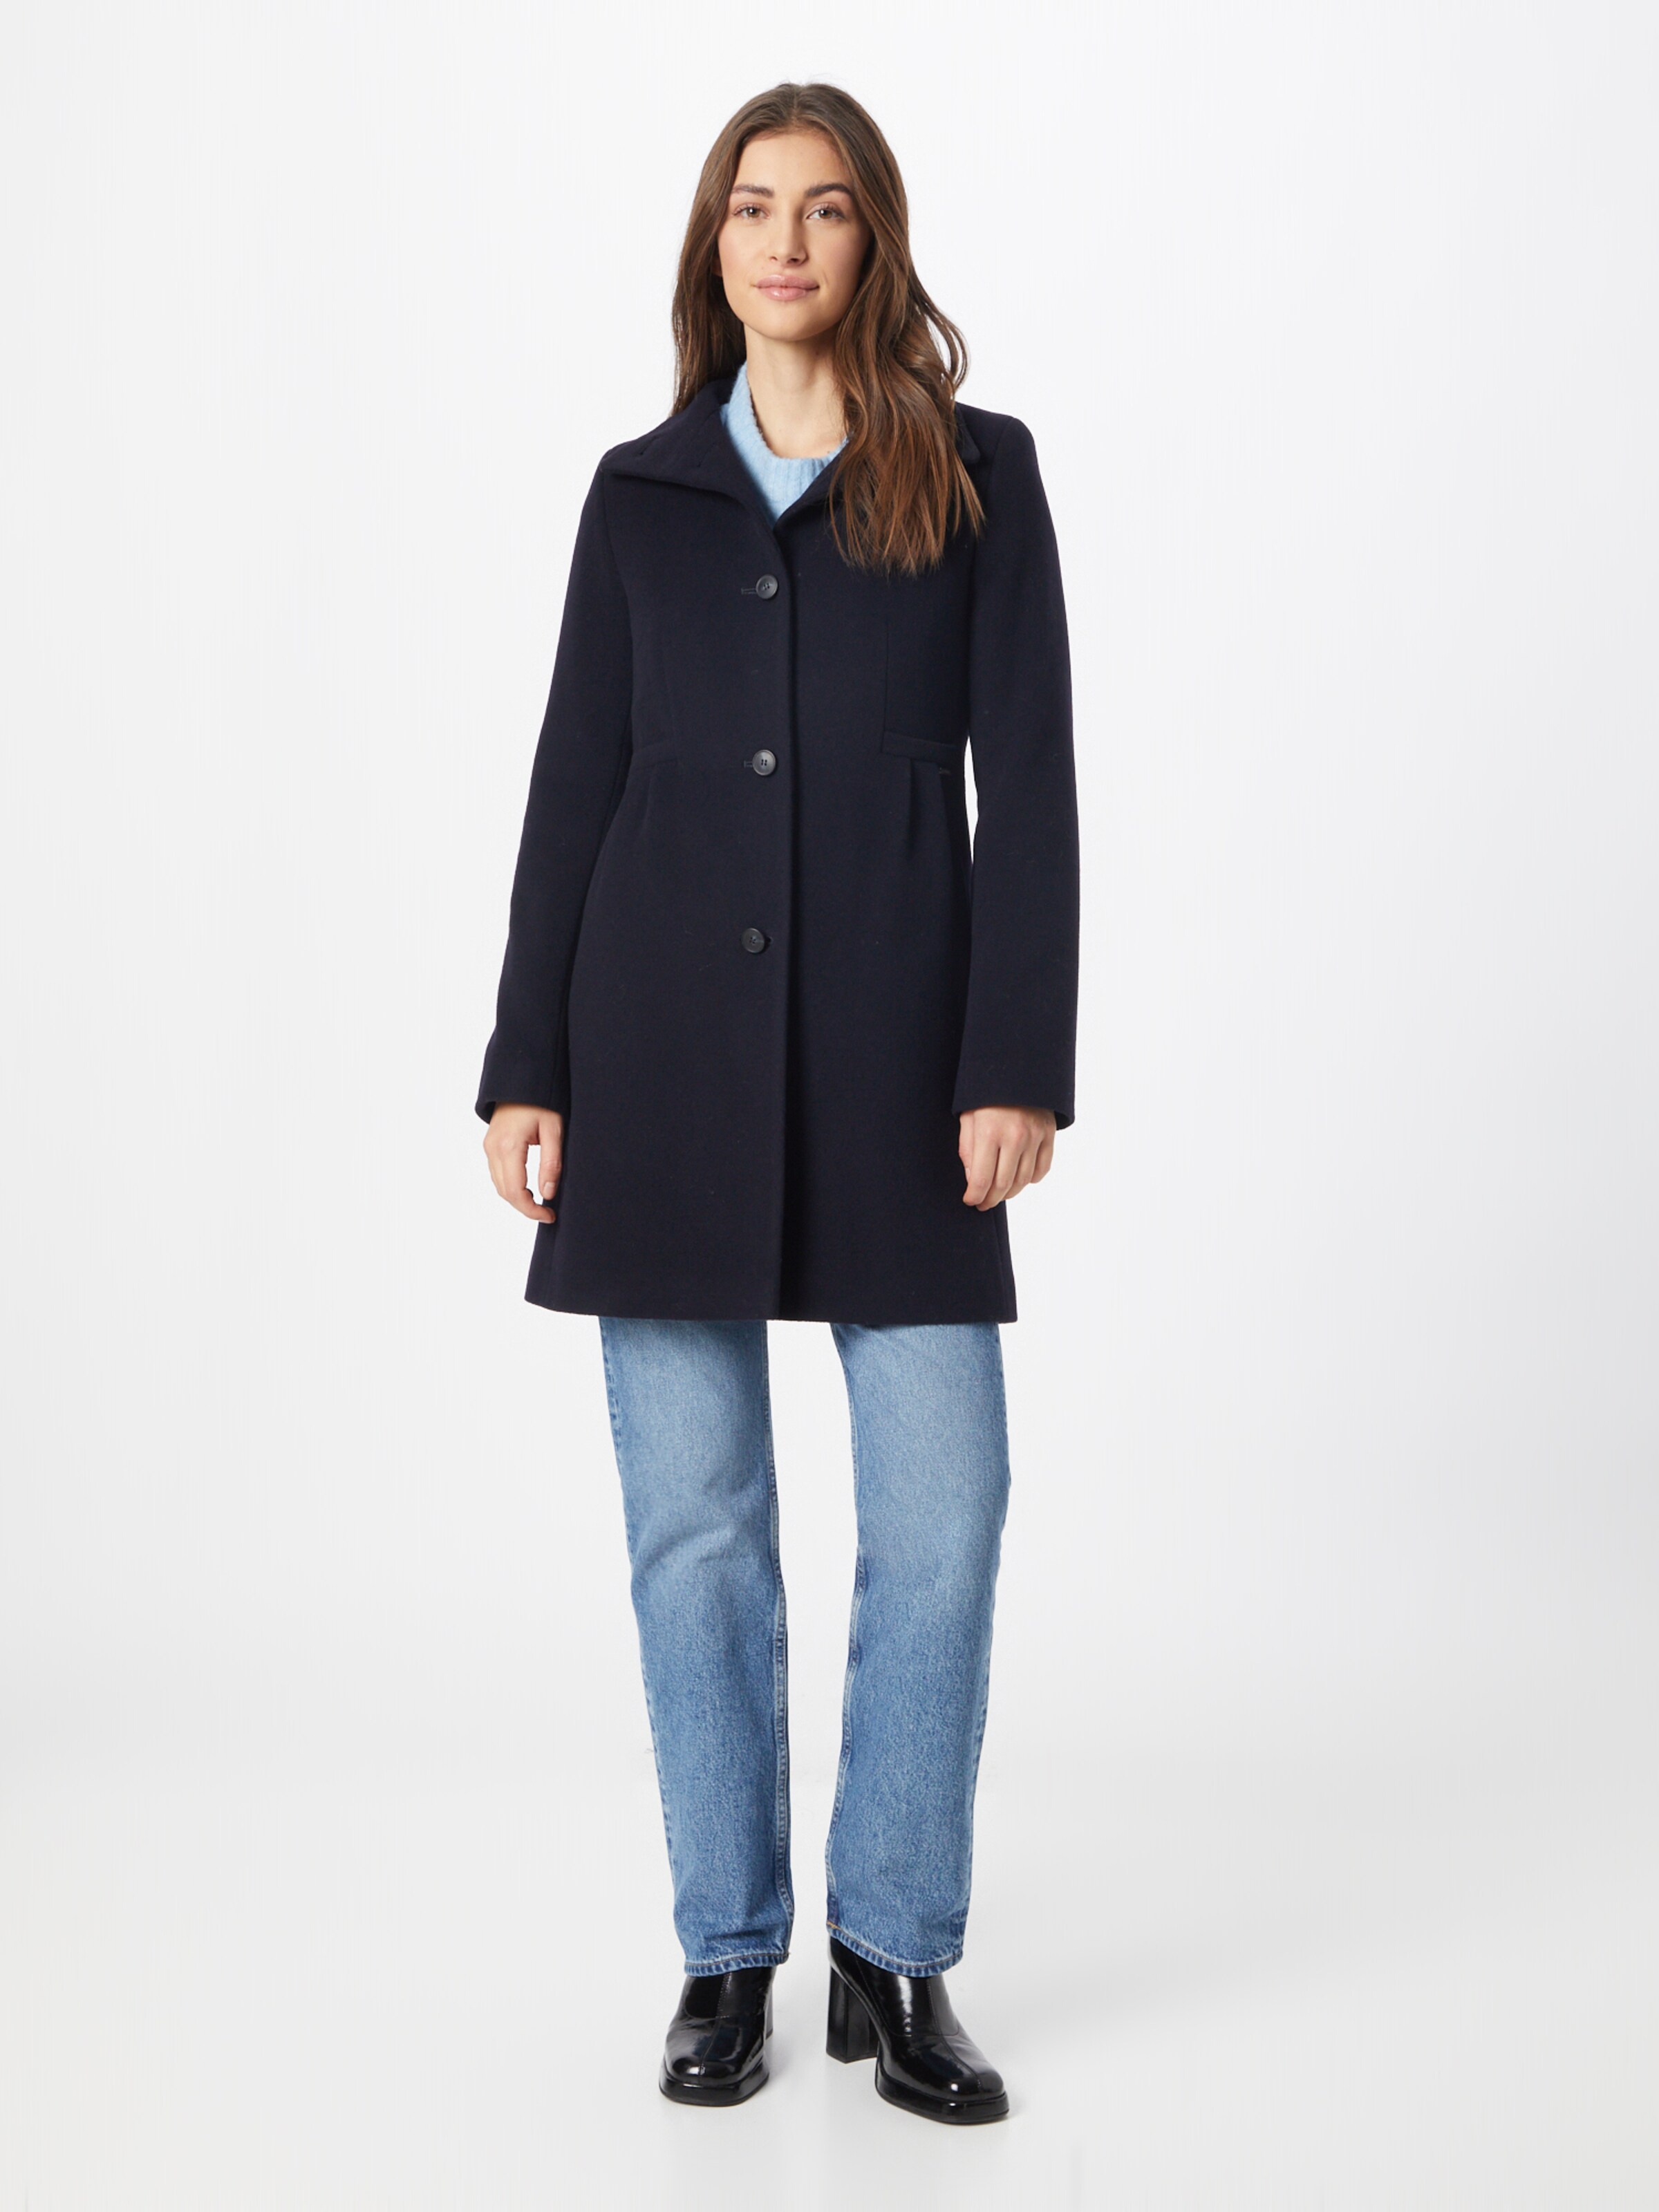 iYYVV Winter Warm Women Short Coat Leather Jacket Zipper Tops Overcoat Hoodie Outwear 